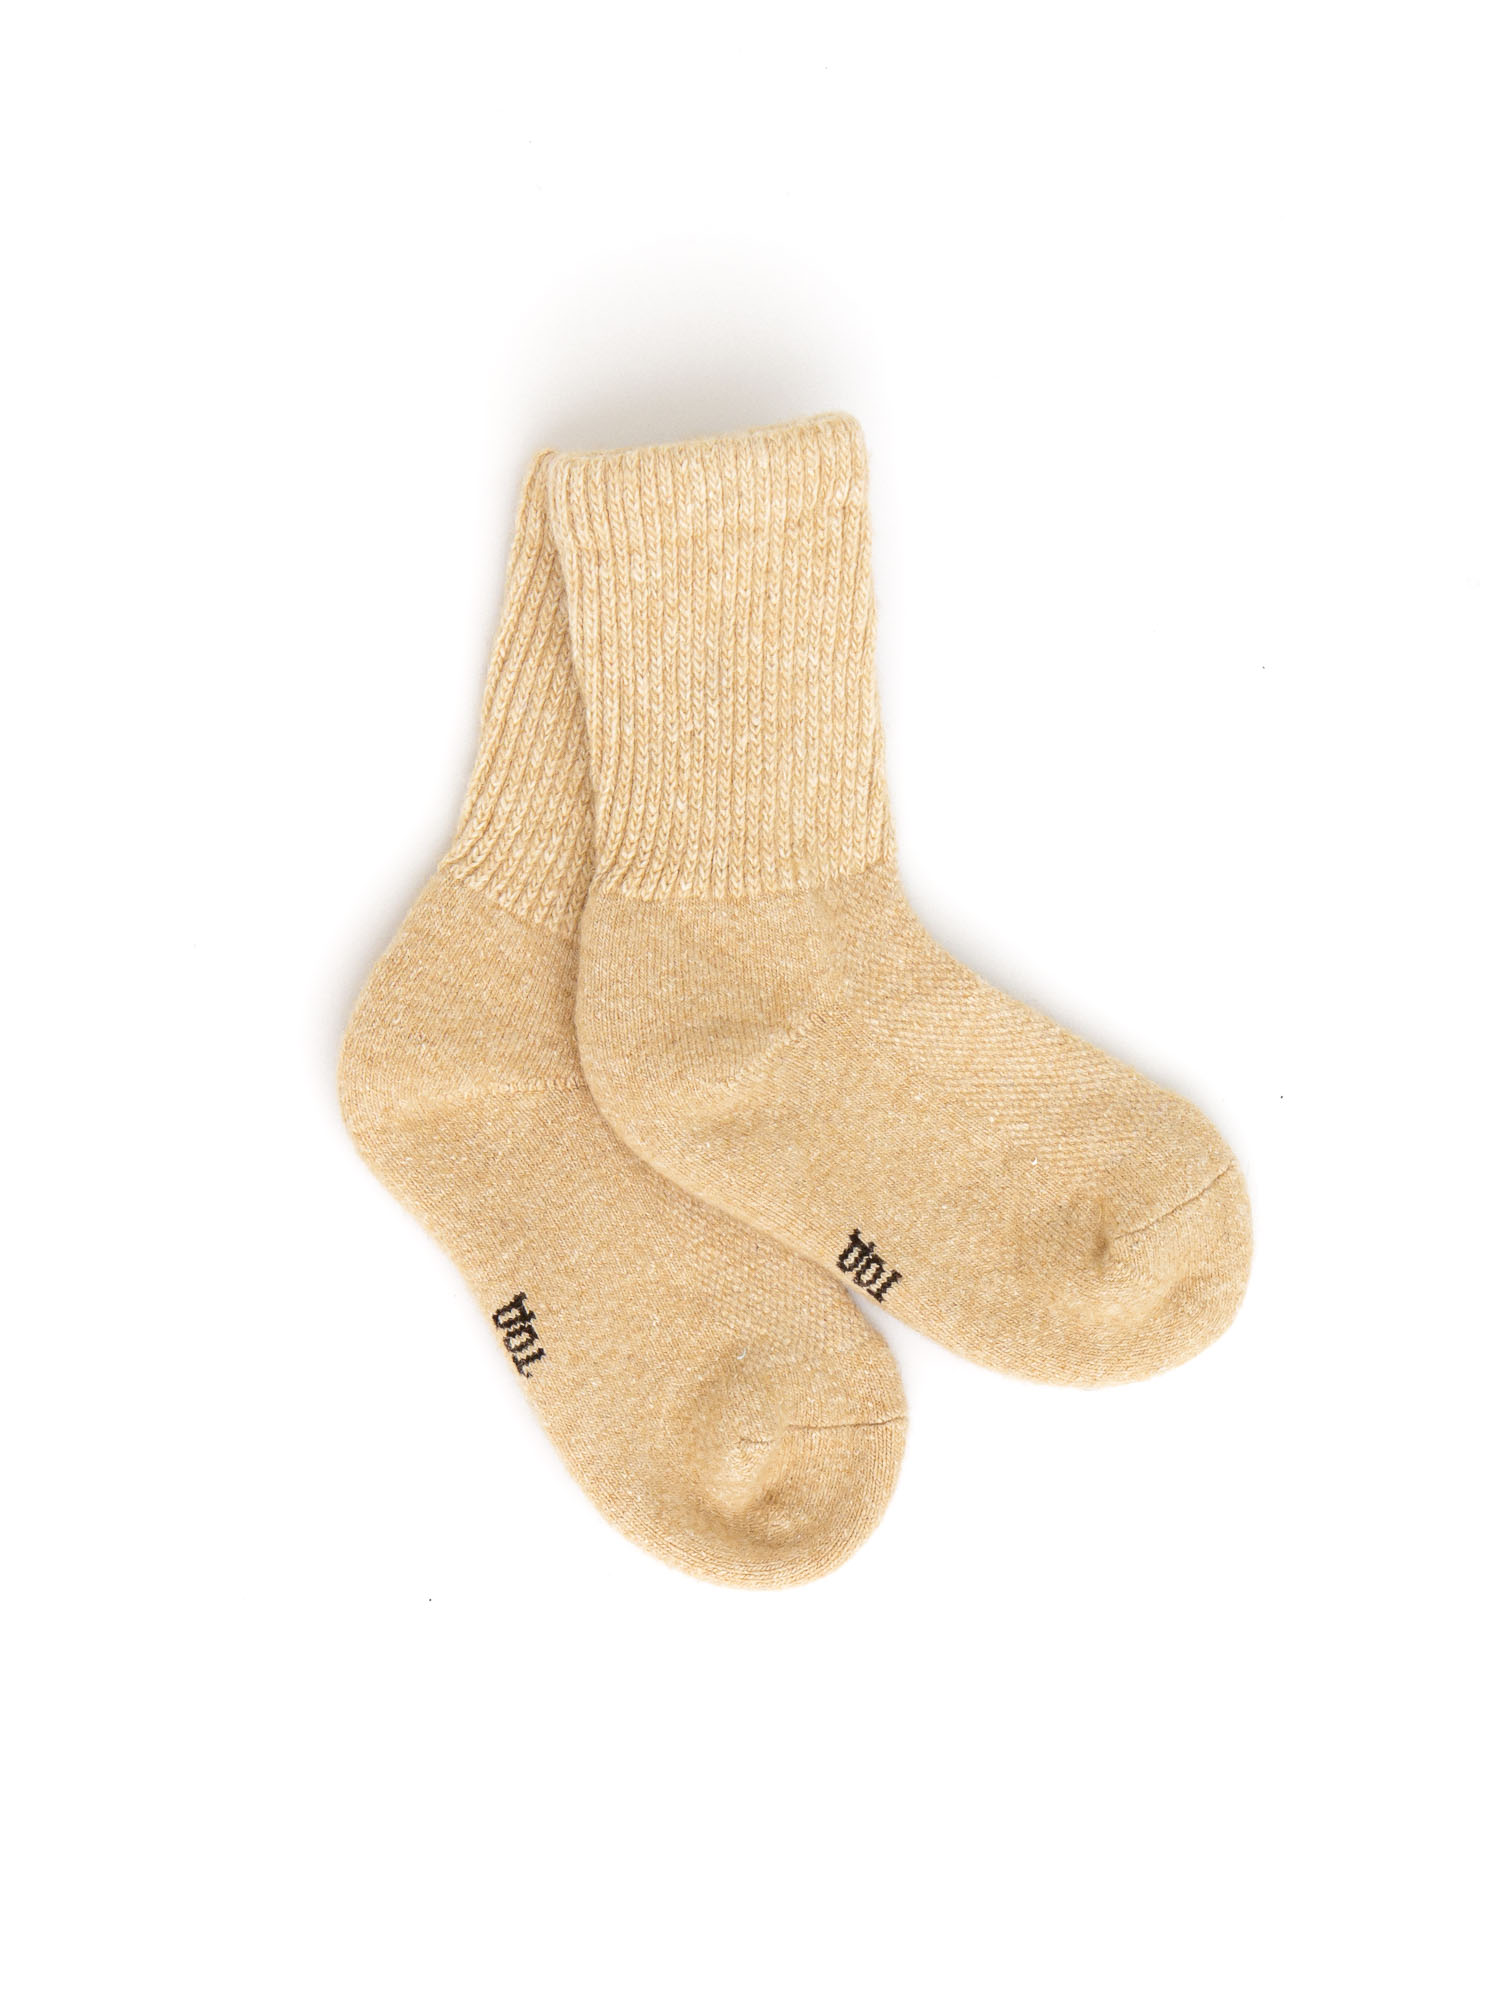 Детские носки из монгольской шерсти бежевые 4 (16-18 см) ТОД ОЙМС ХХК, цвет бежевый, размер 4 (16-18 см)